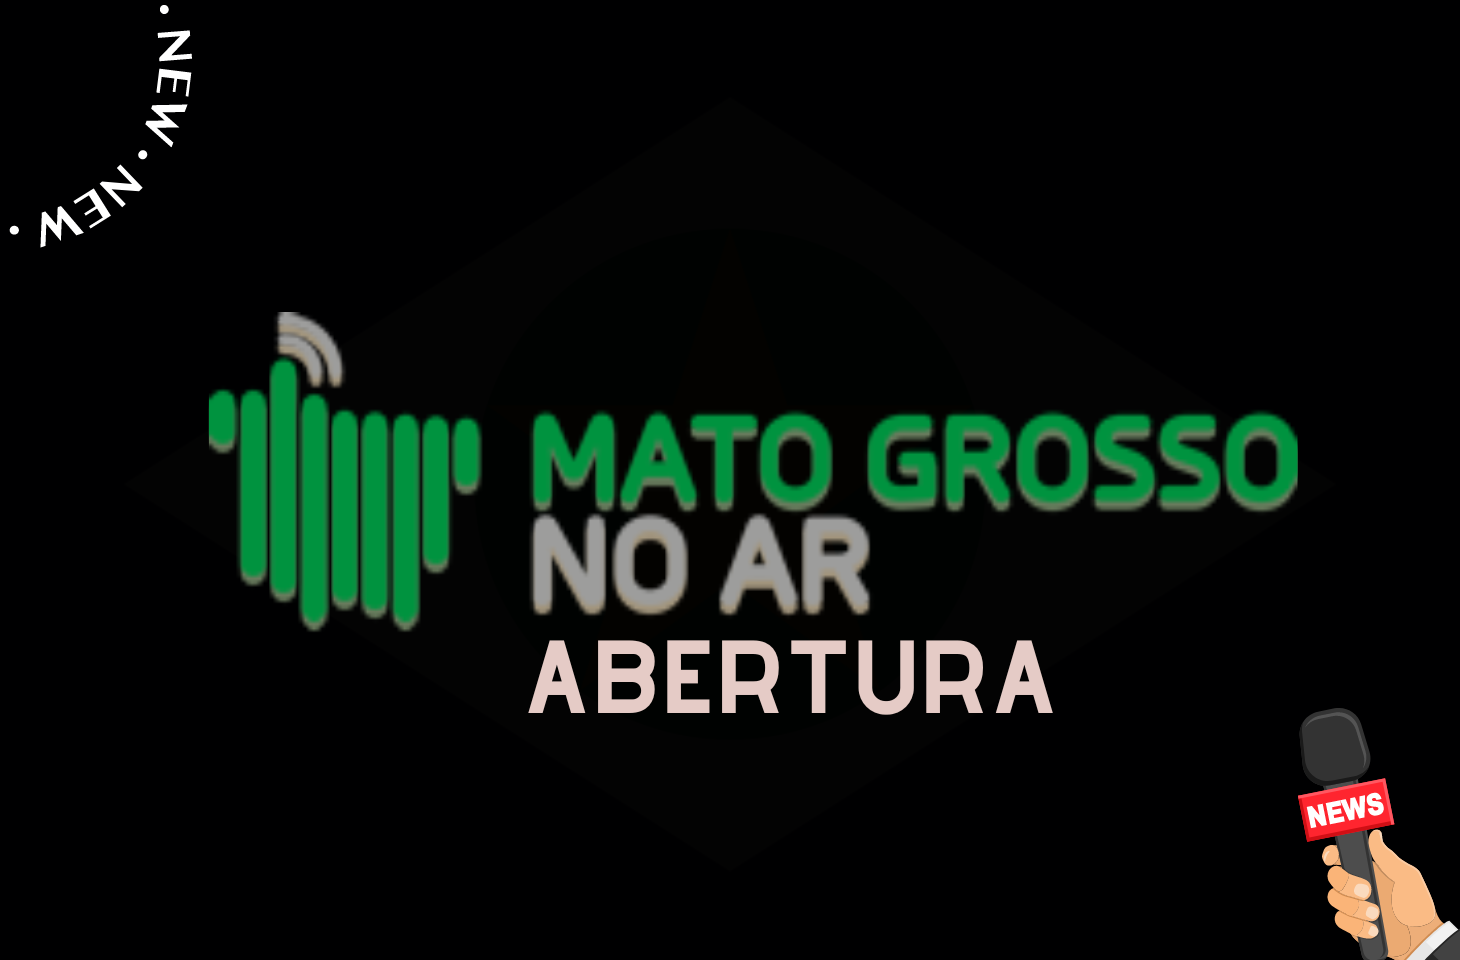 Jornal Mato Grosso No Ar - Abertura - 09-02